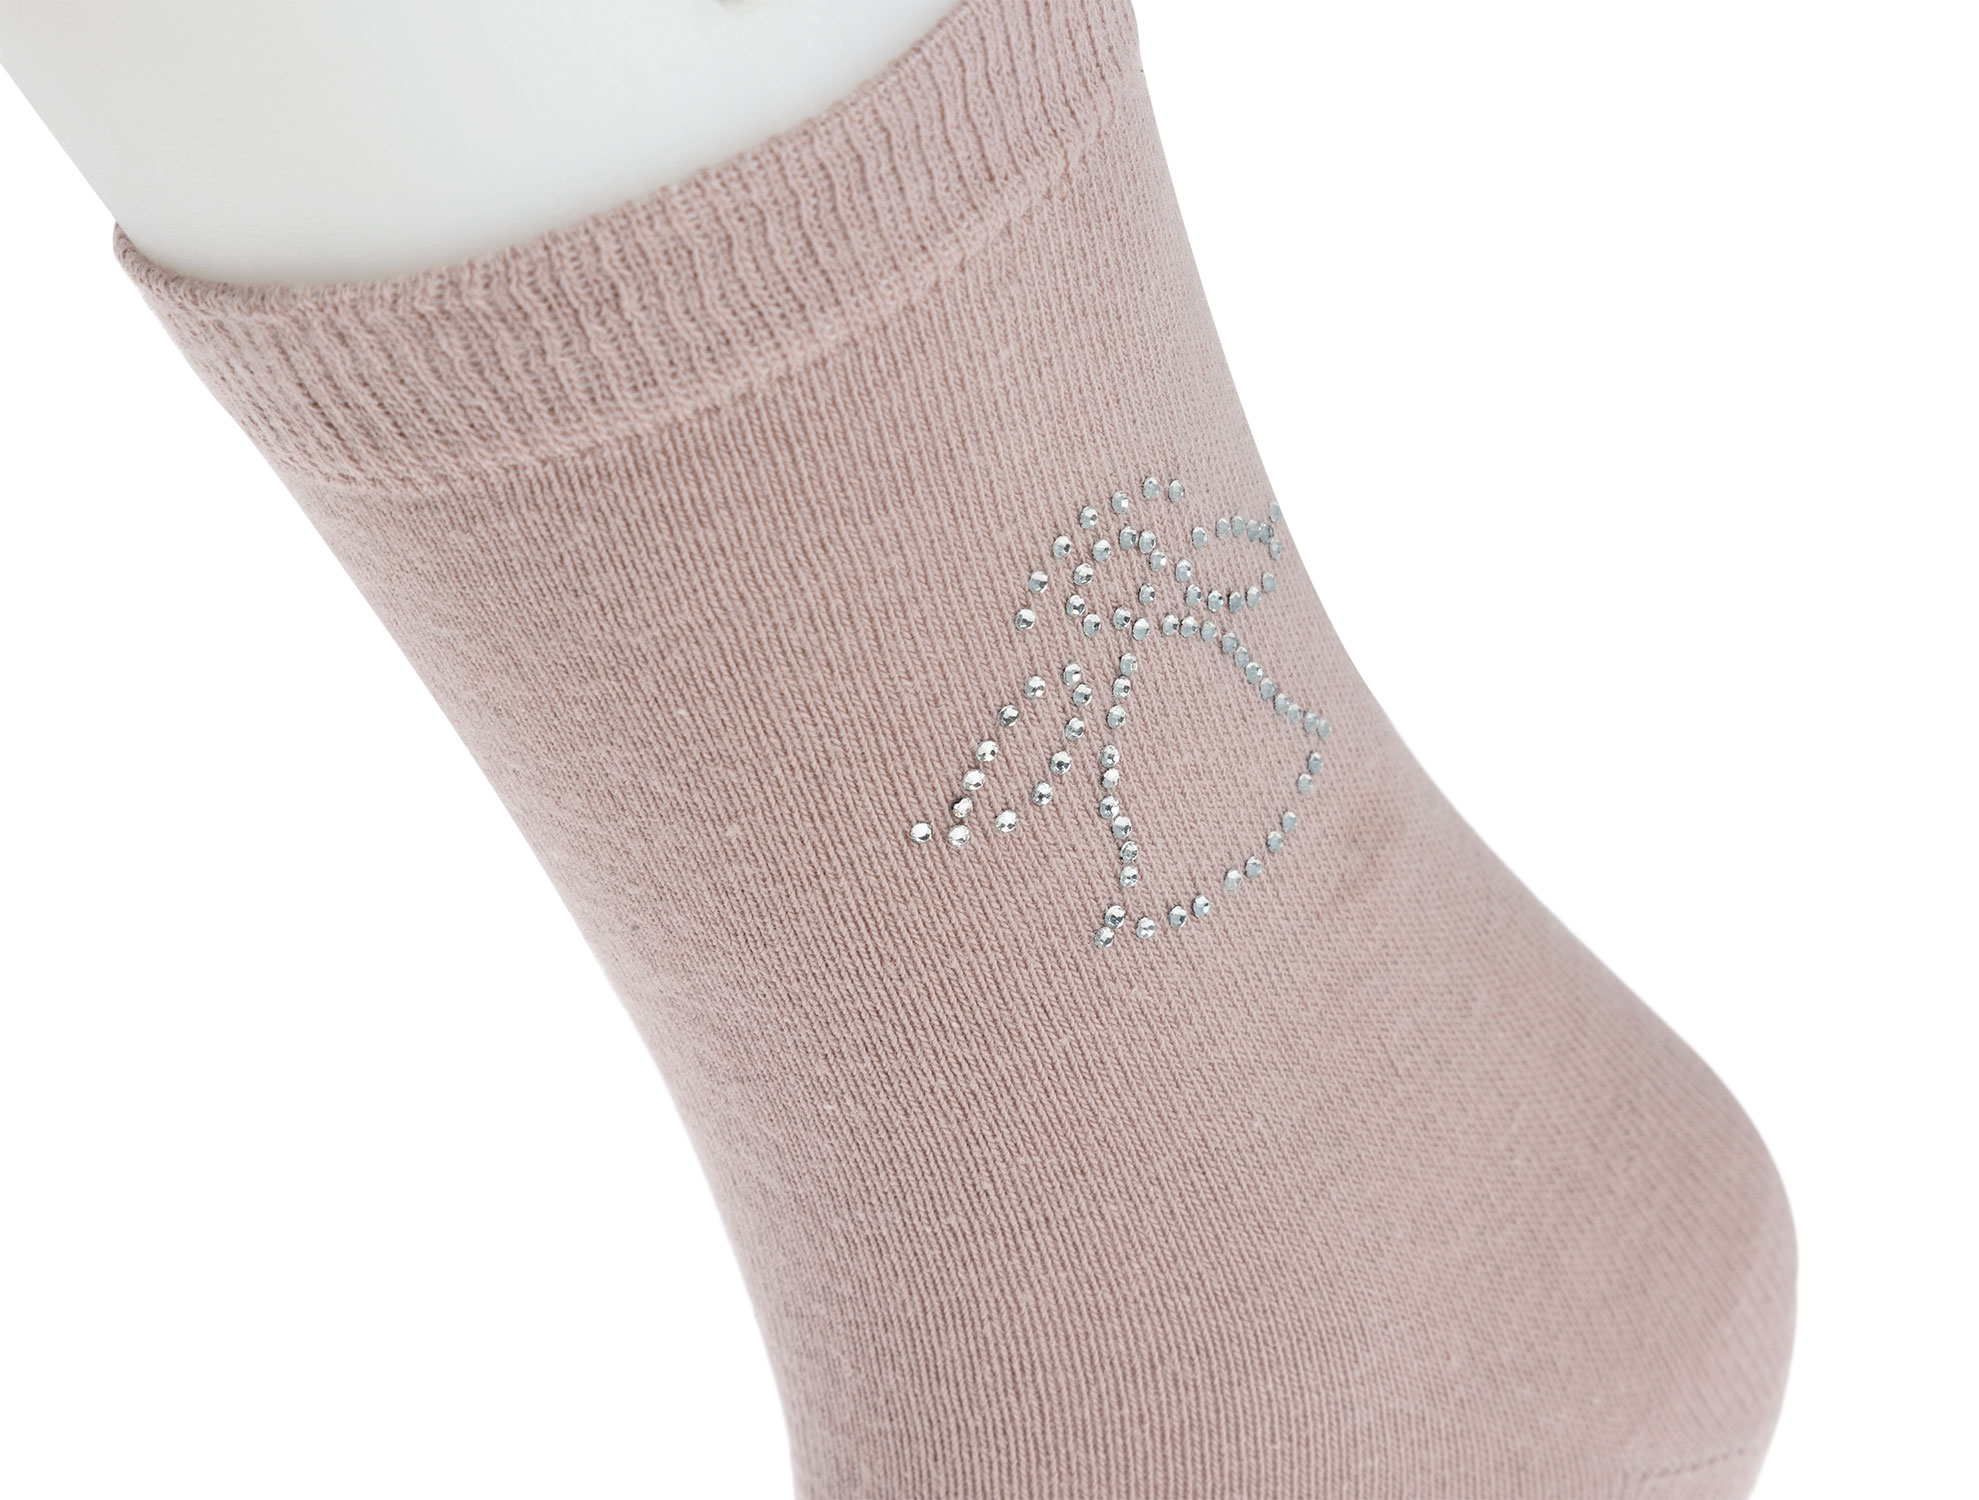  Kristal Melek Baskılı Bayan Soket Çorap